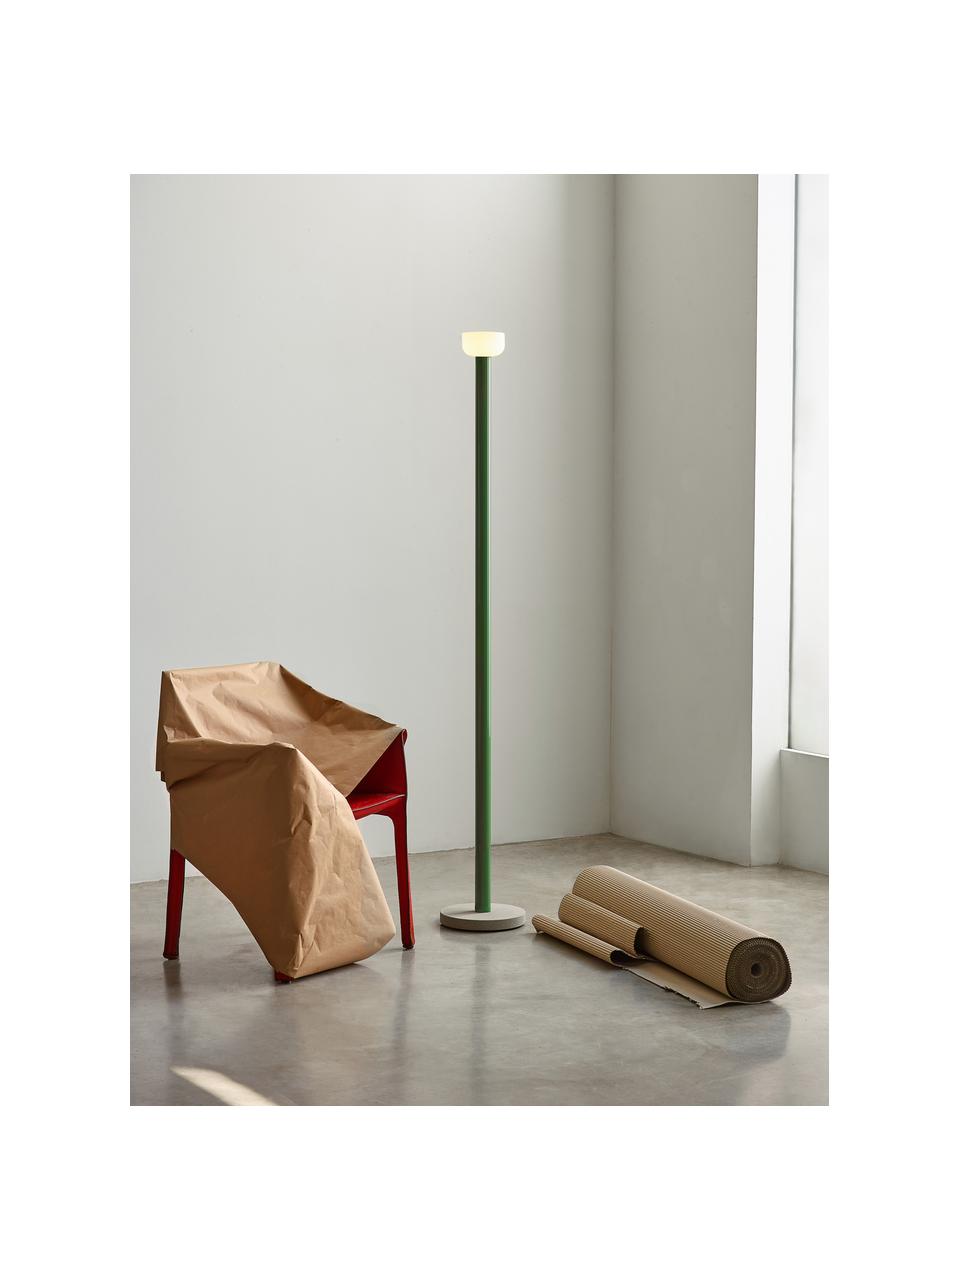 Grote dimbare LED vloerlamp Bellhop, Lampenkap: glas, Lampvoet: beton, Groen, H 178 cm